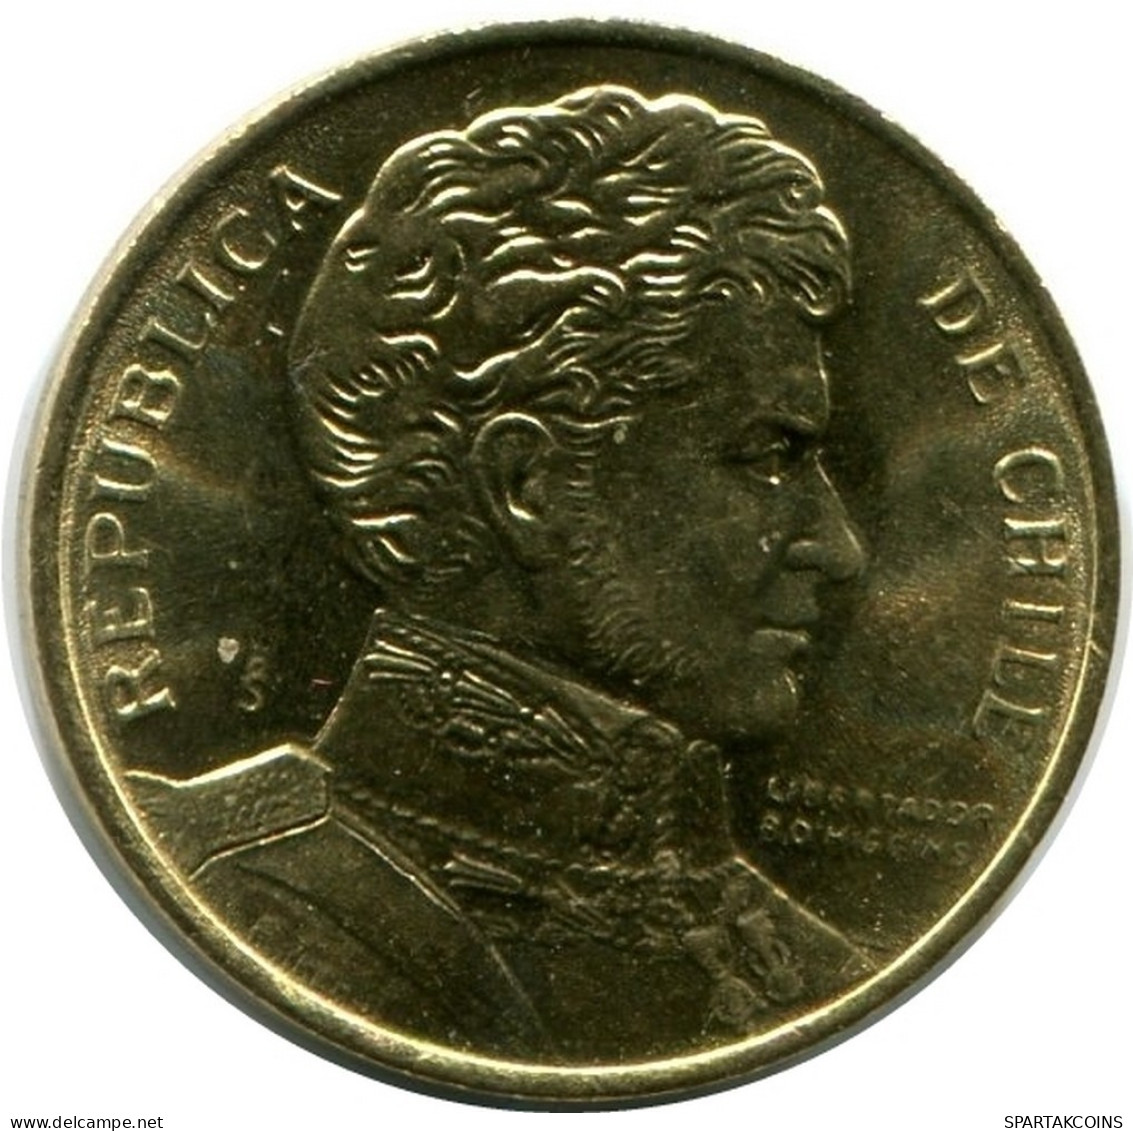 1 PESO 1990 CHILE UNC Münze #M10124.D.A - Chile